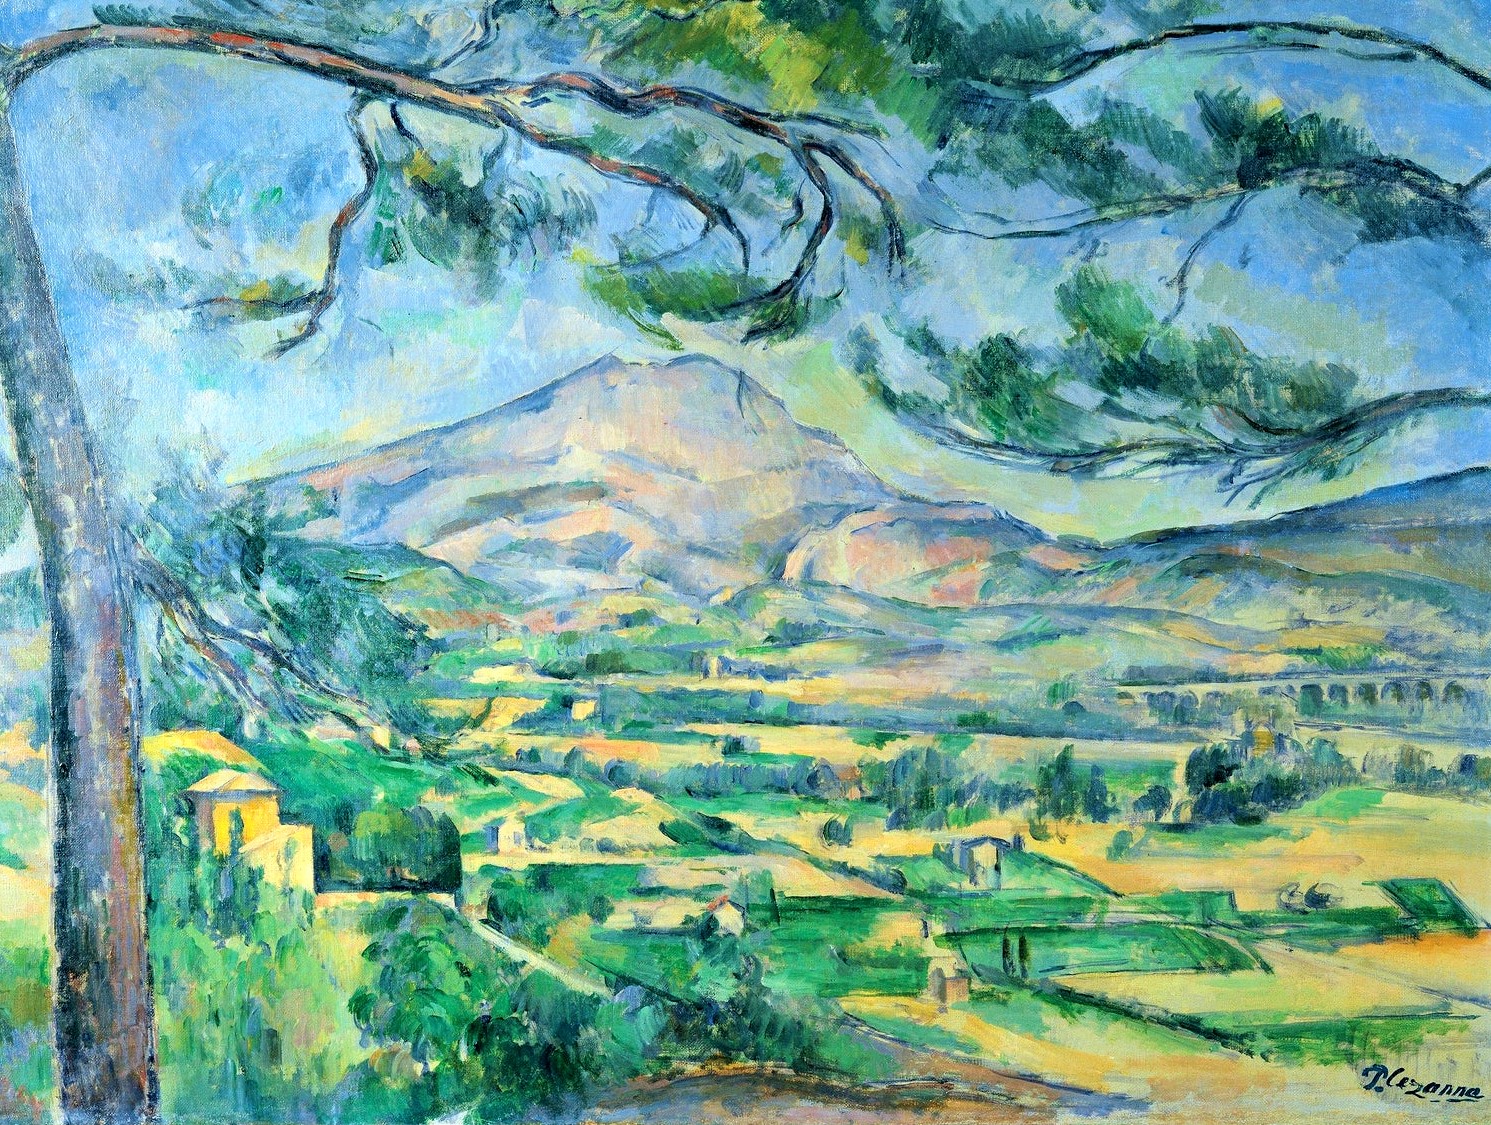 Il colore che ritrae la luce: la magia della Provenza secondo Paul Cézanne. VIDEO